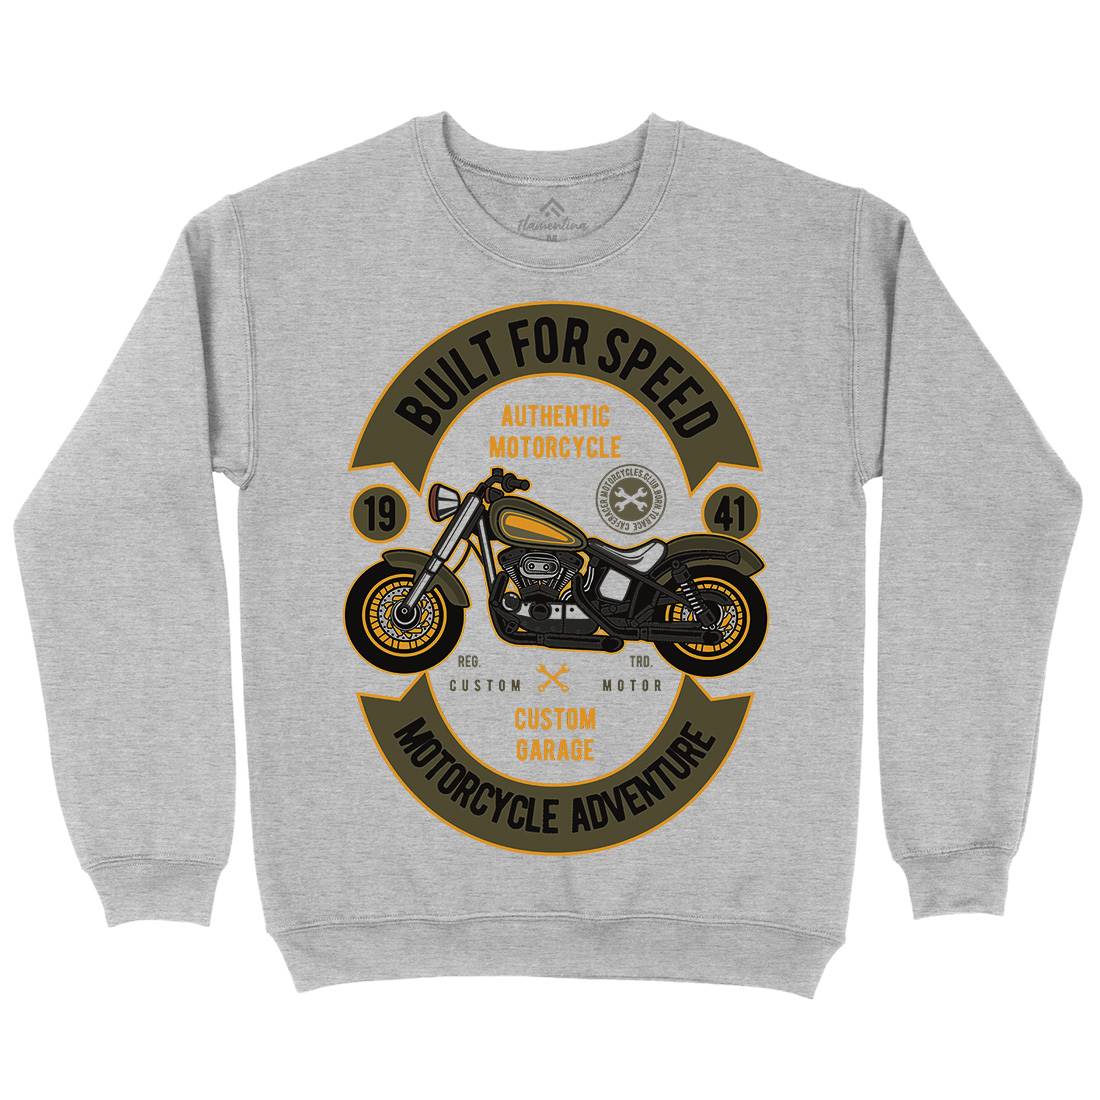 Built For Speed Kids Crew Neck Sweatshirt Motorcycles D512